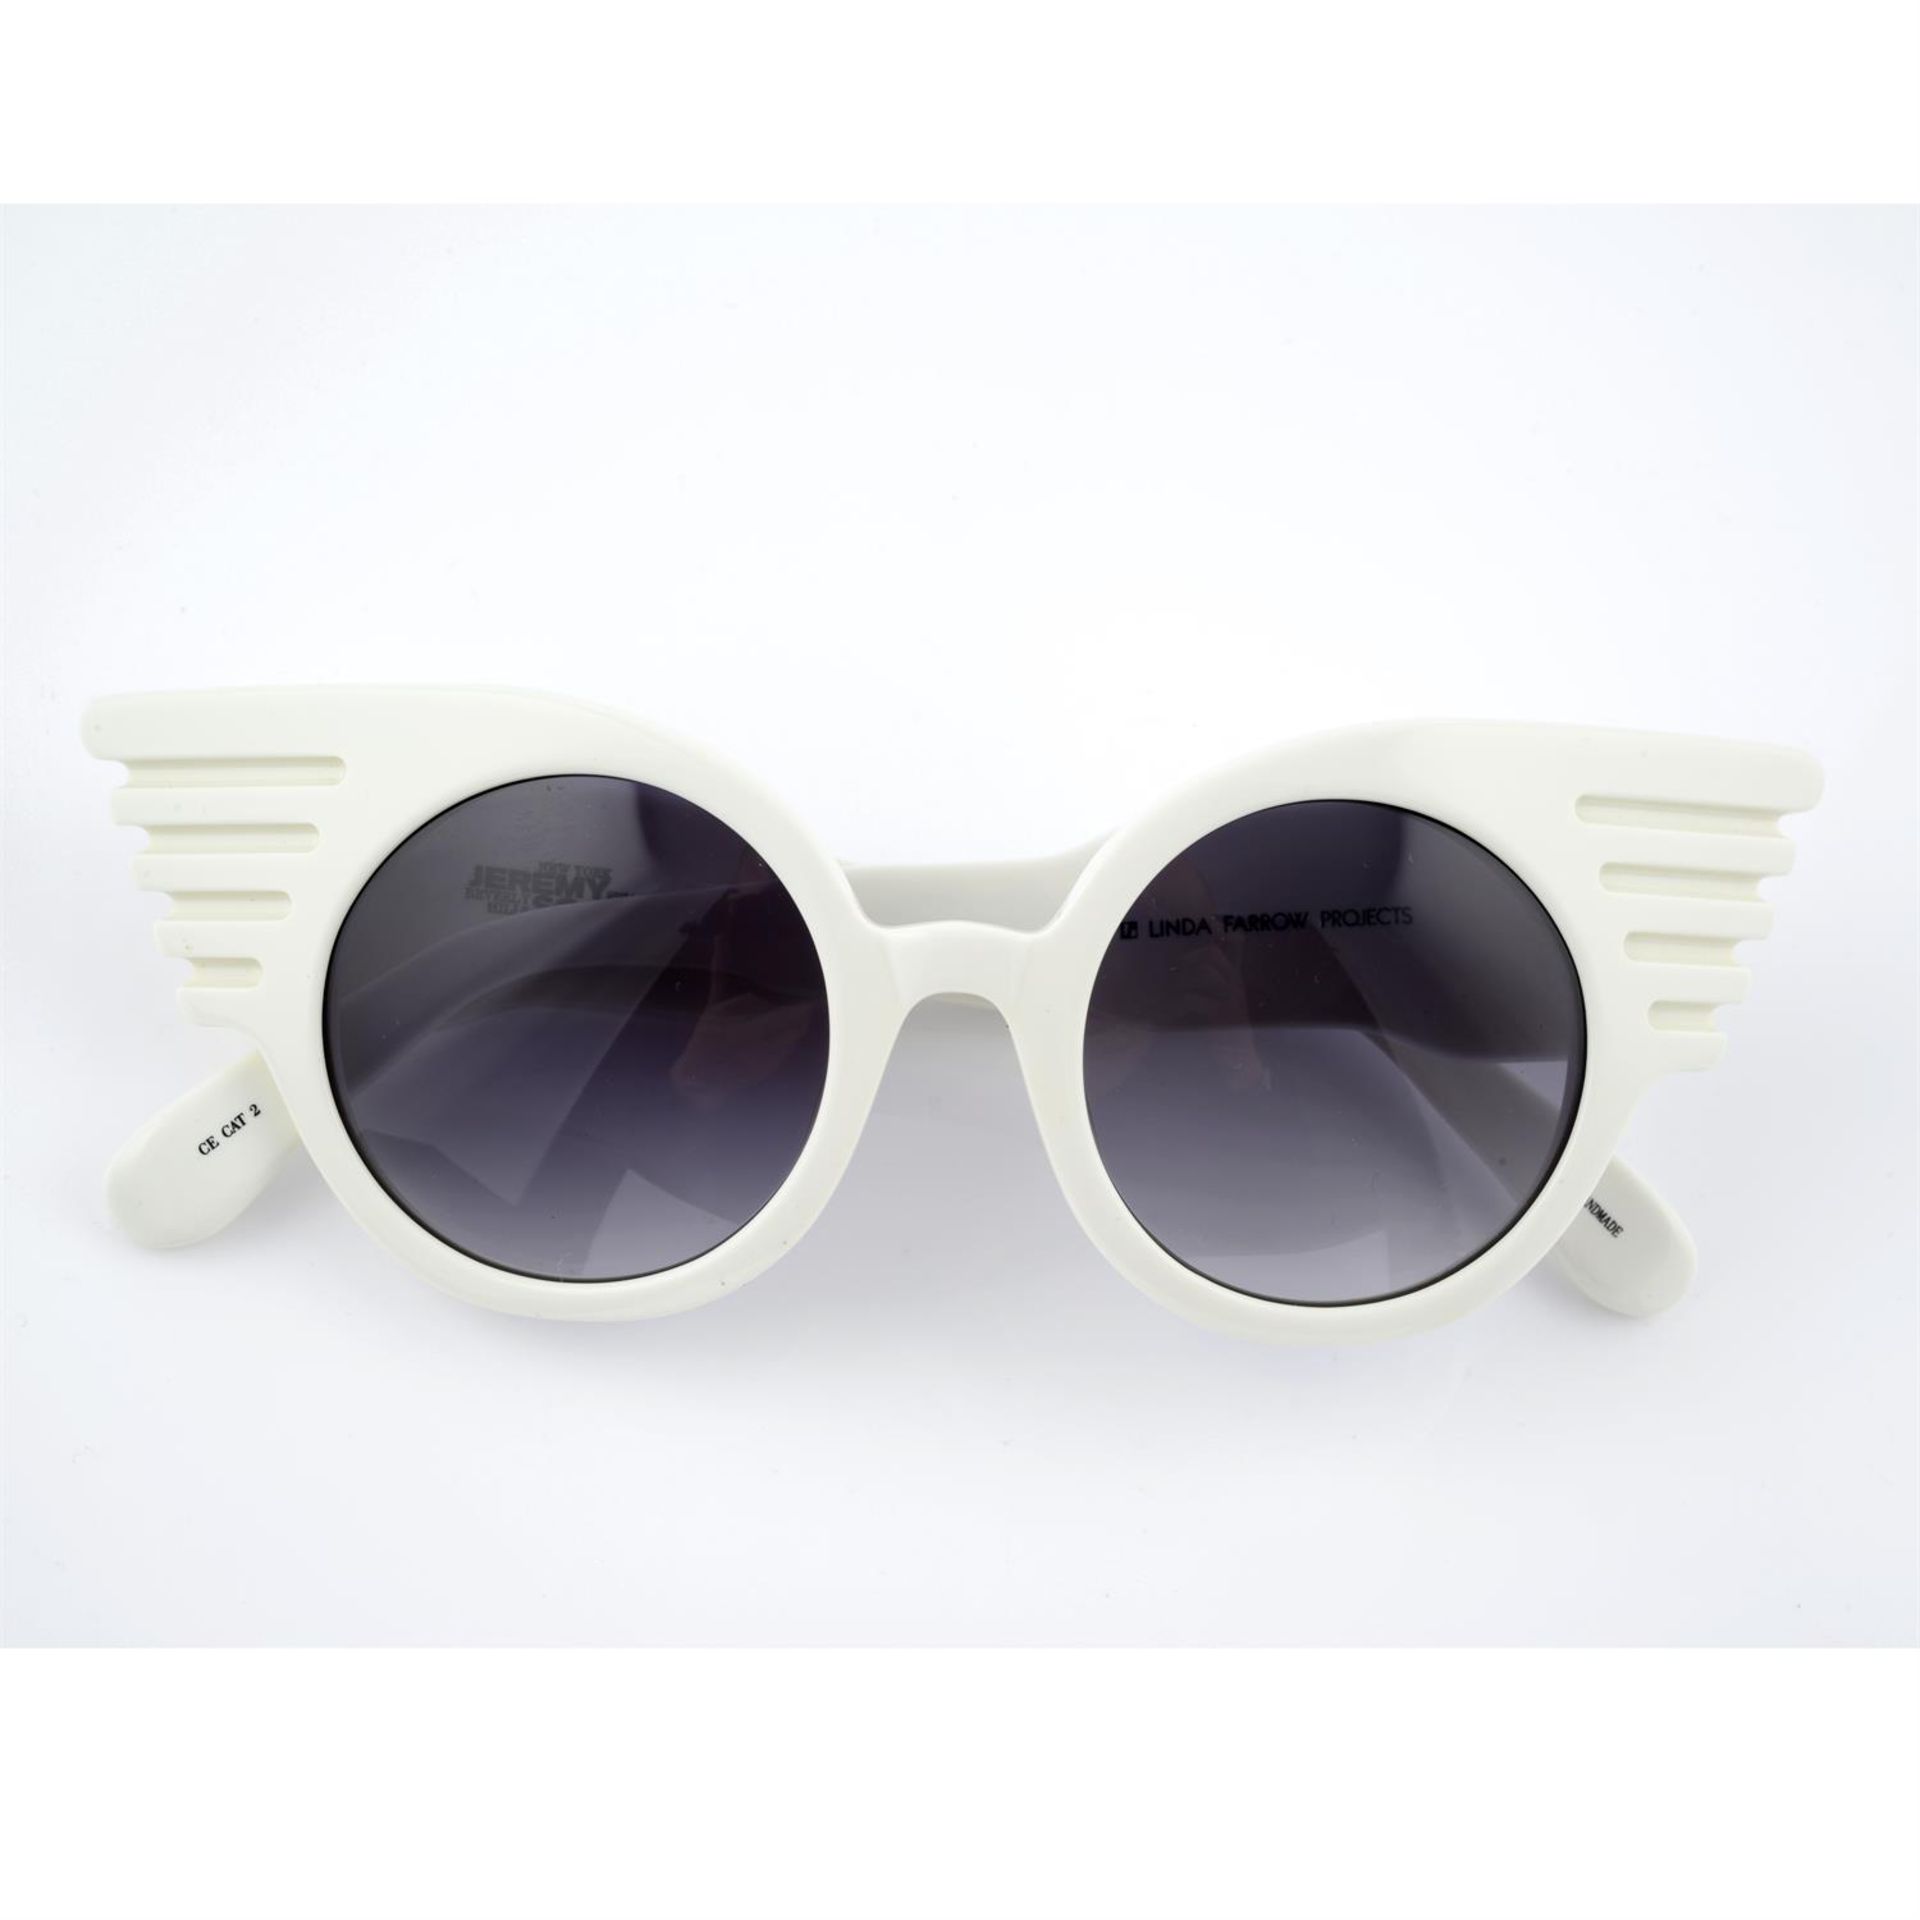 LINDA FARROW - a pair of sunglasses.